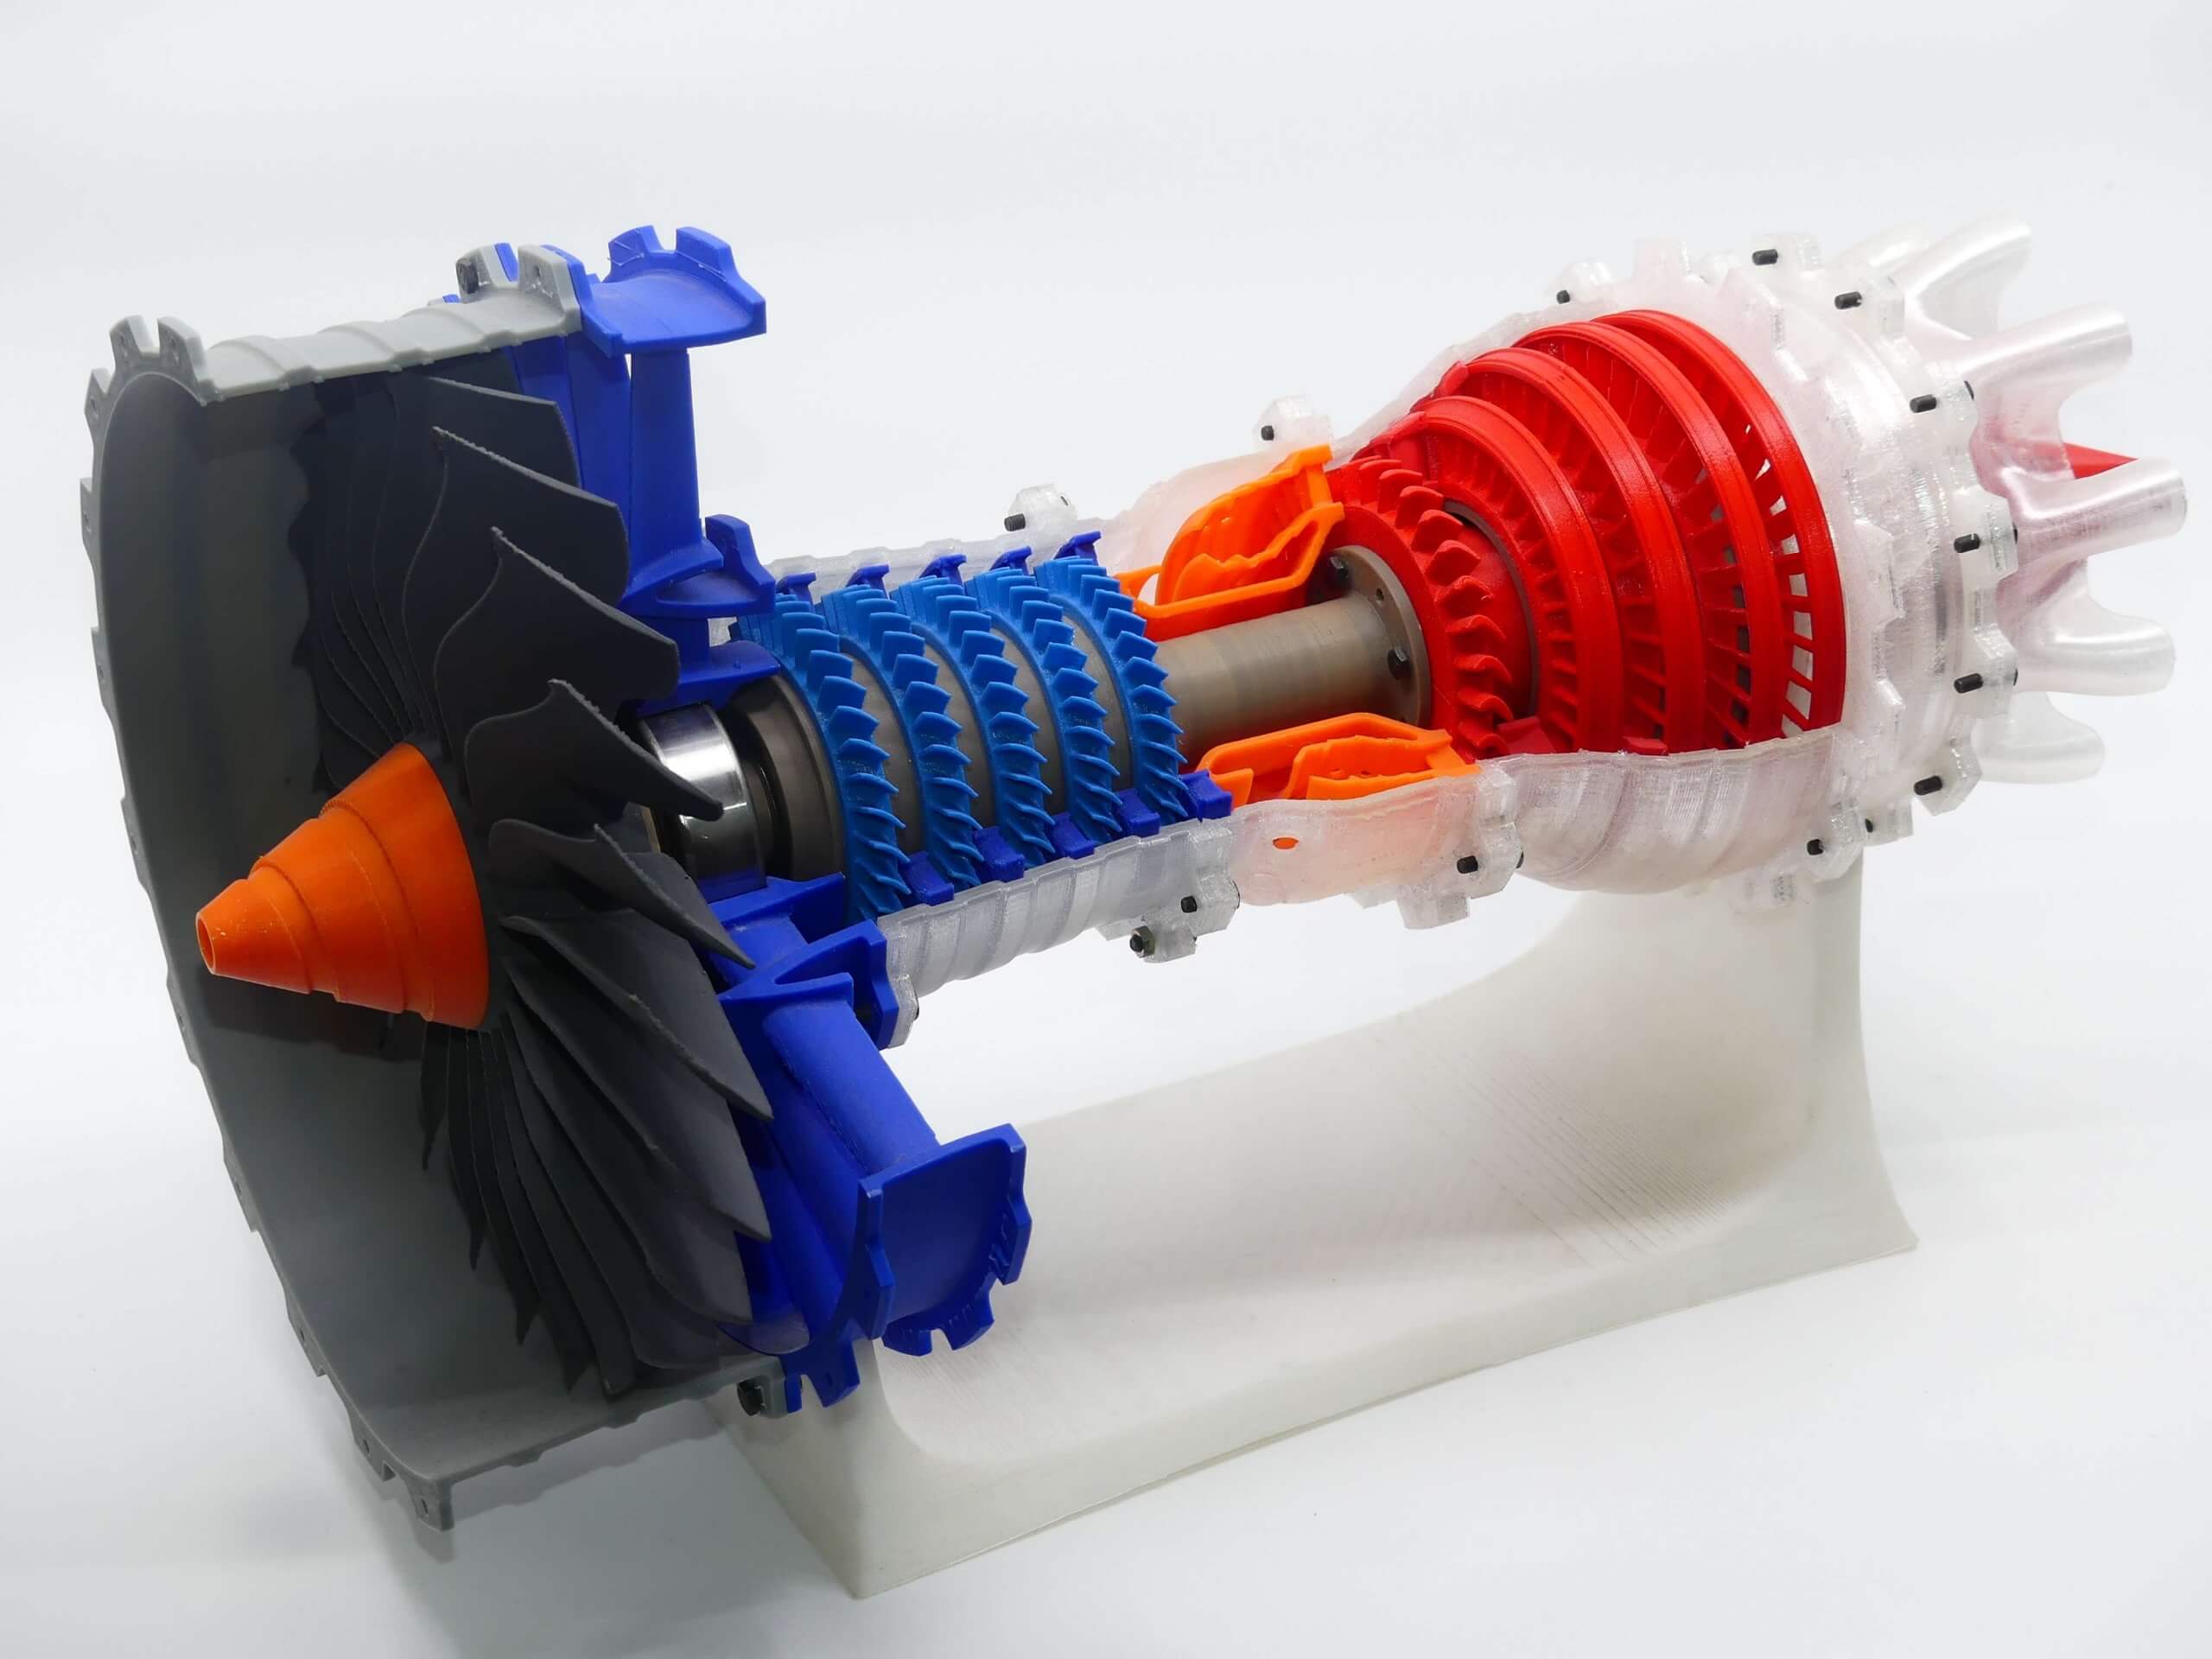 Impresión 3D aeroespacial